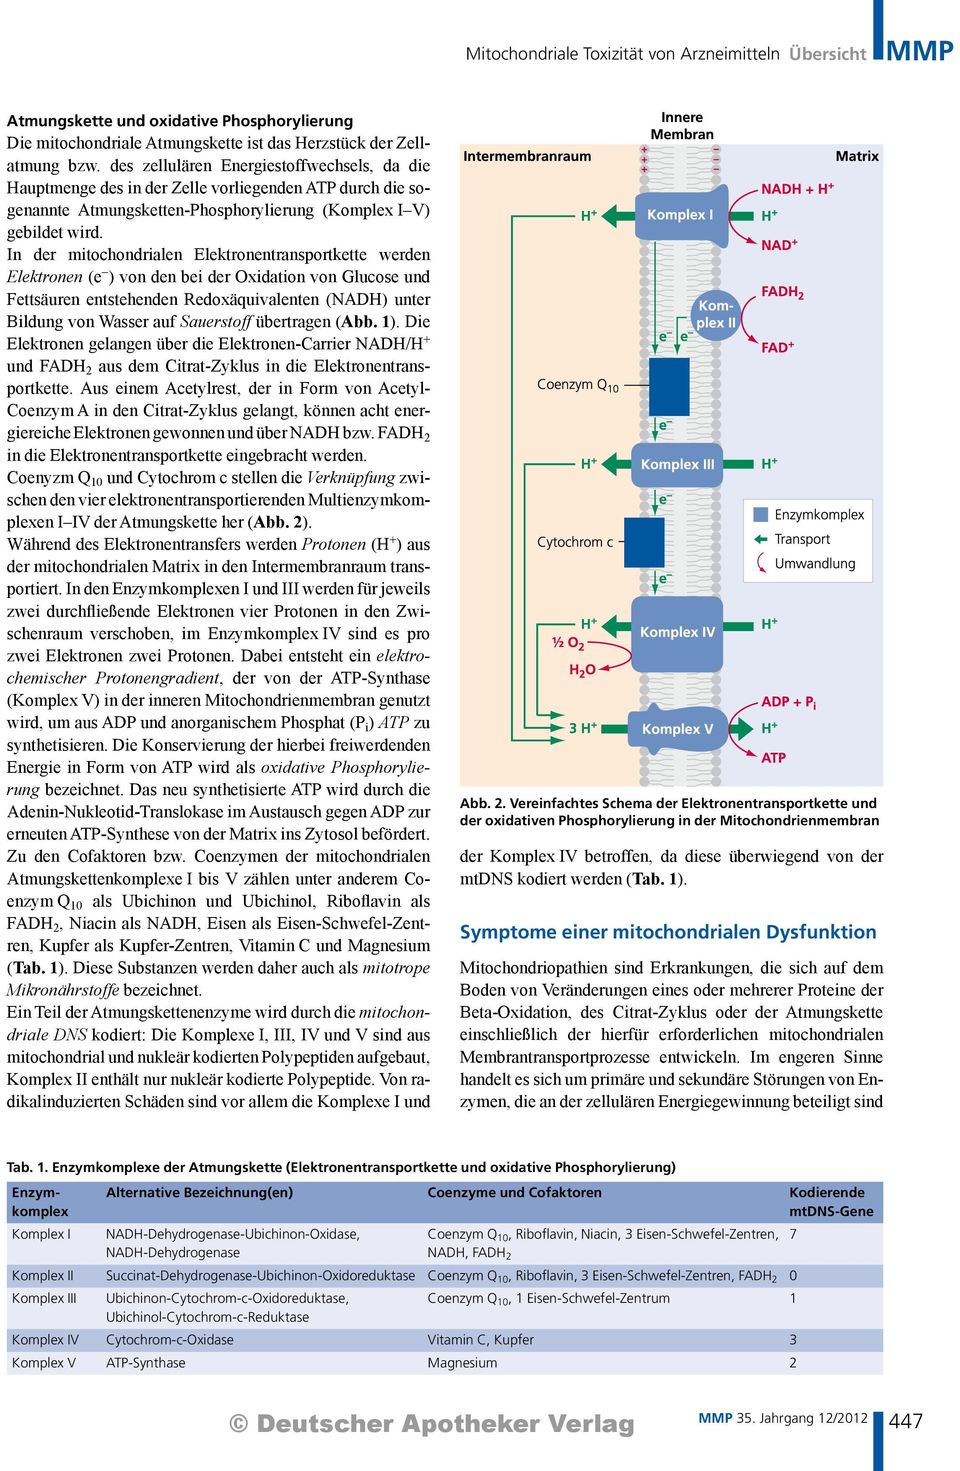 In der mitochondrialen Elektronentransportkette werden Elektronen (e ) von den bei der Oxidation von Glucose und Fettsäuren entstehenden Redoxäquivalenten (NADH) unter Bildung von Wasser auf